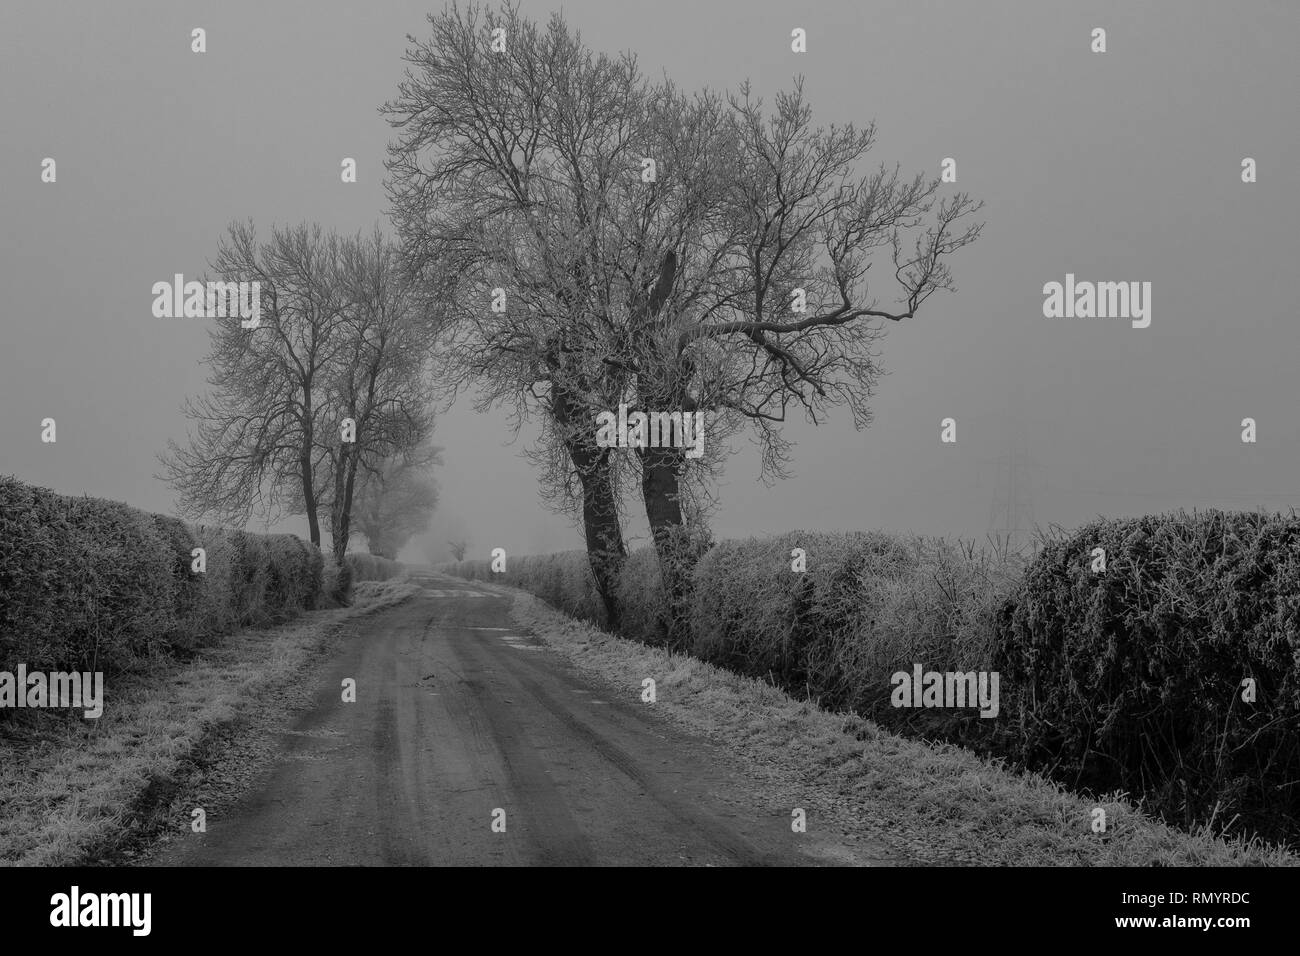 Un pays lane​ frosty brumeux et tourné en noir et blanc avec des arbres de chaque côté de la voie. Banque D'Images